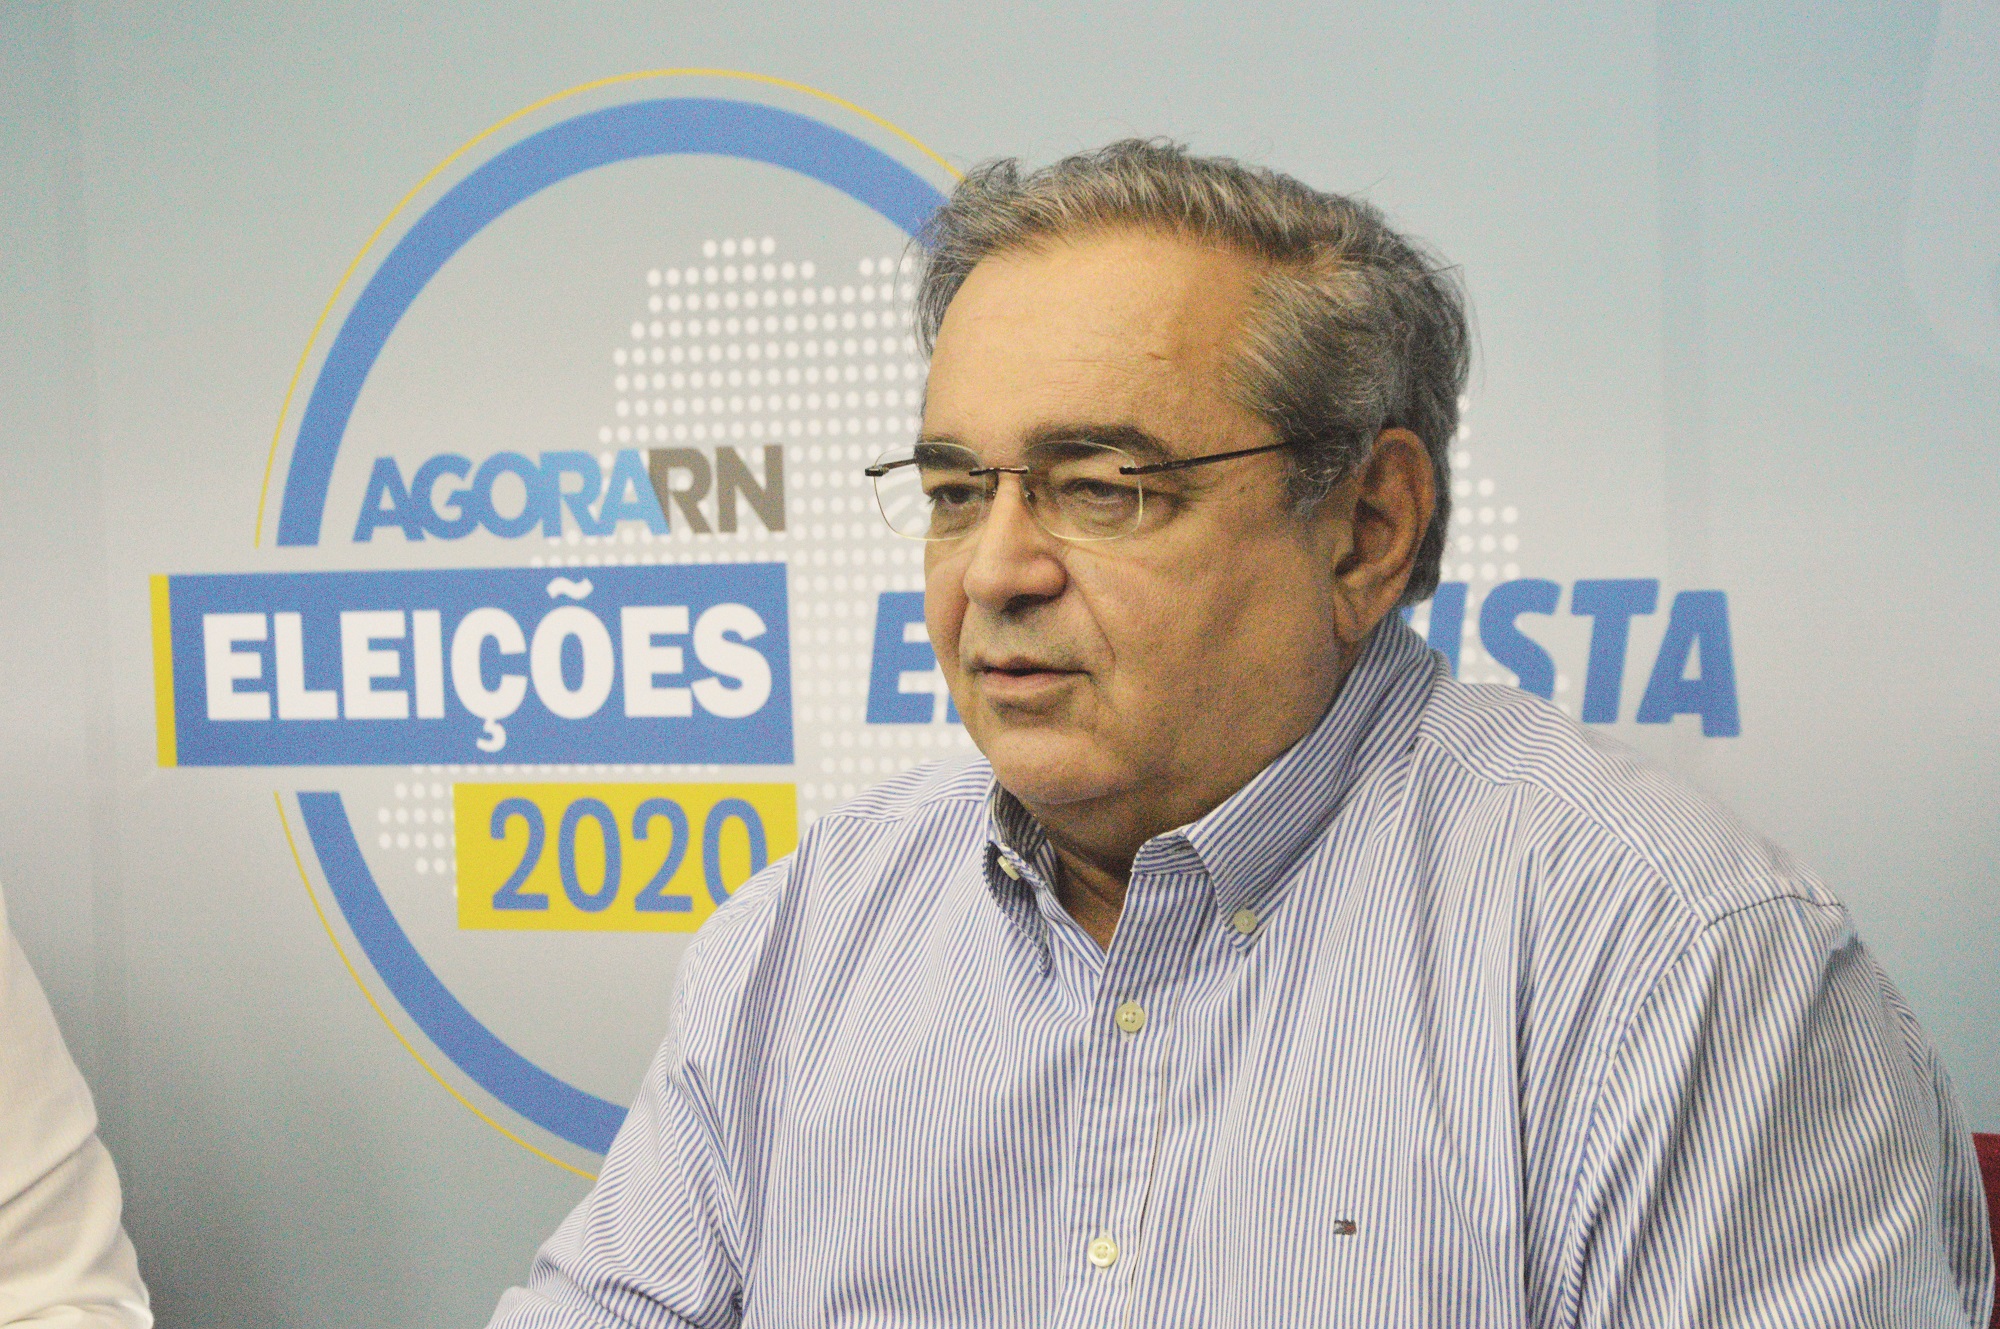 Álvaro promete que, se reeleito, não renunciará e diminuirá número de secretarias